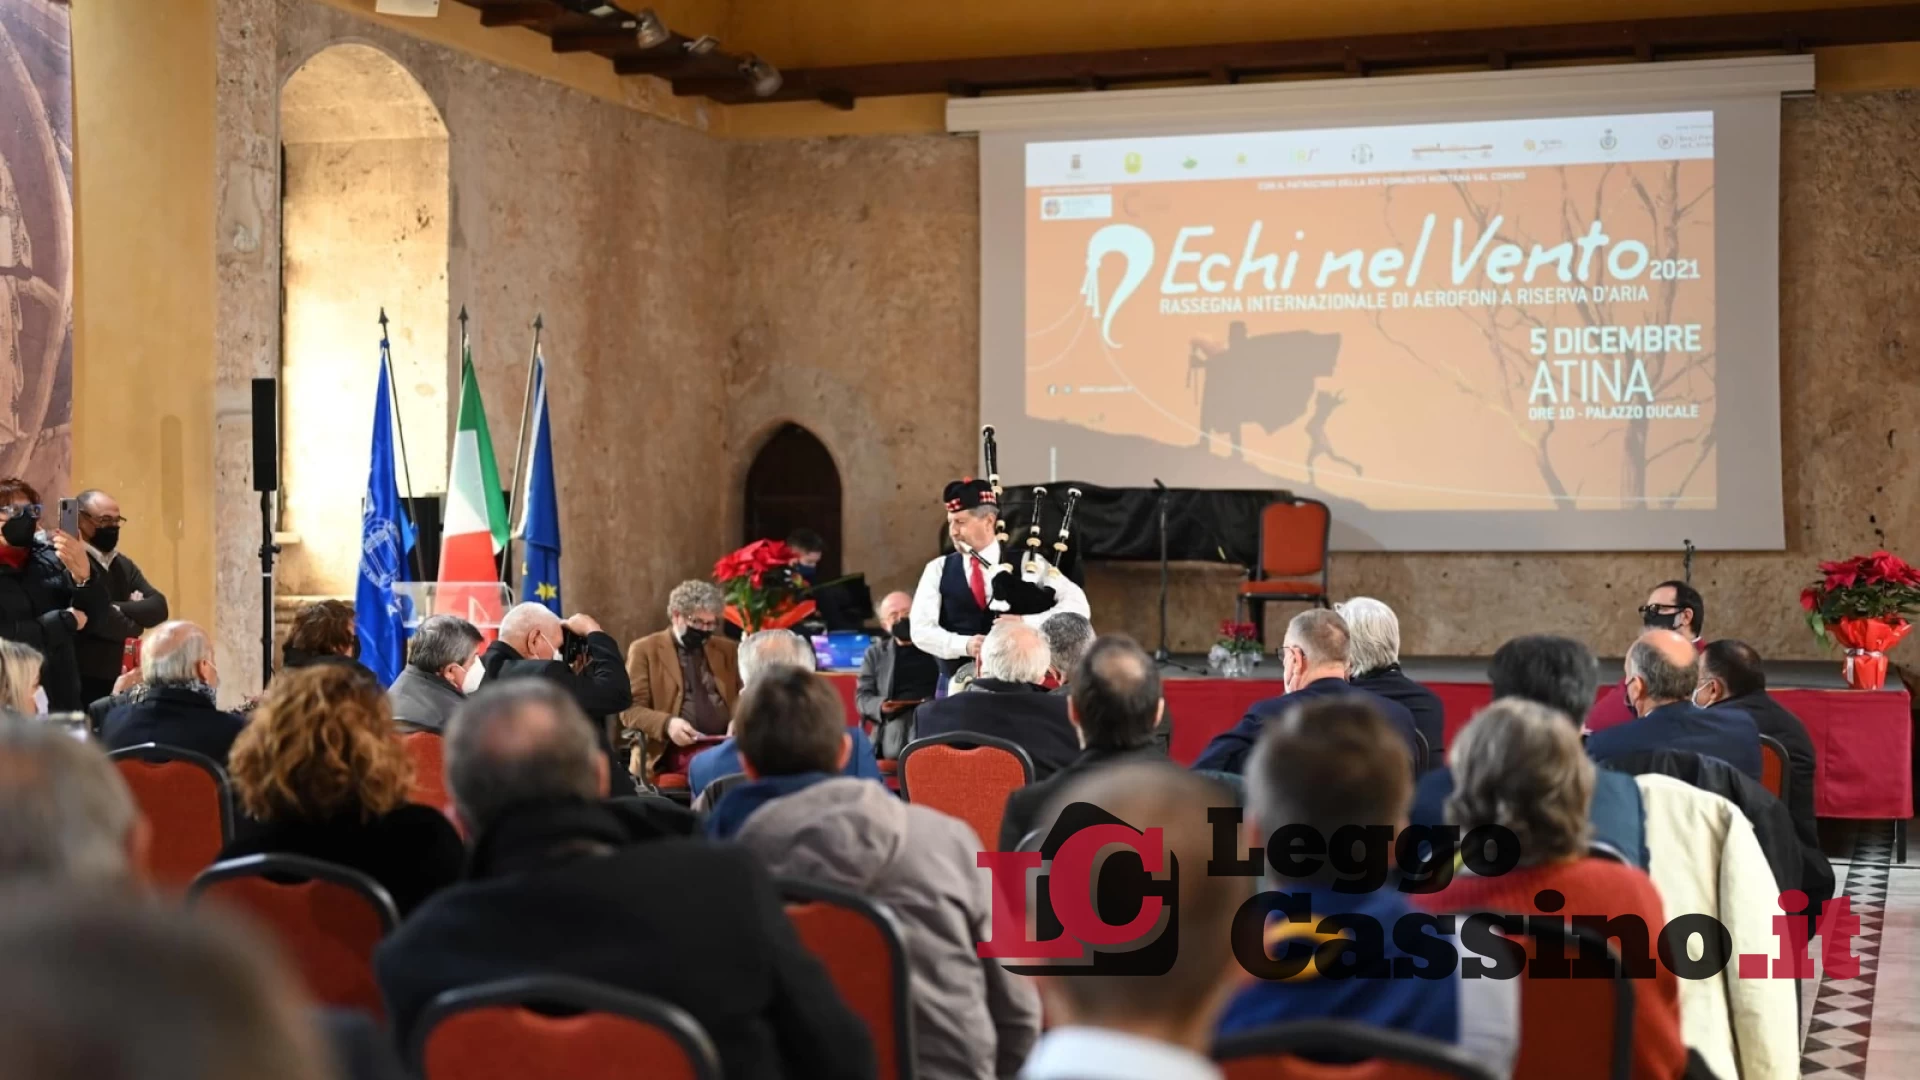 Torna "Echi nel Vento", il Festival dedicato agli strumenti aerofoni della tradizione popolare